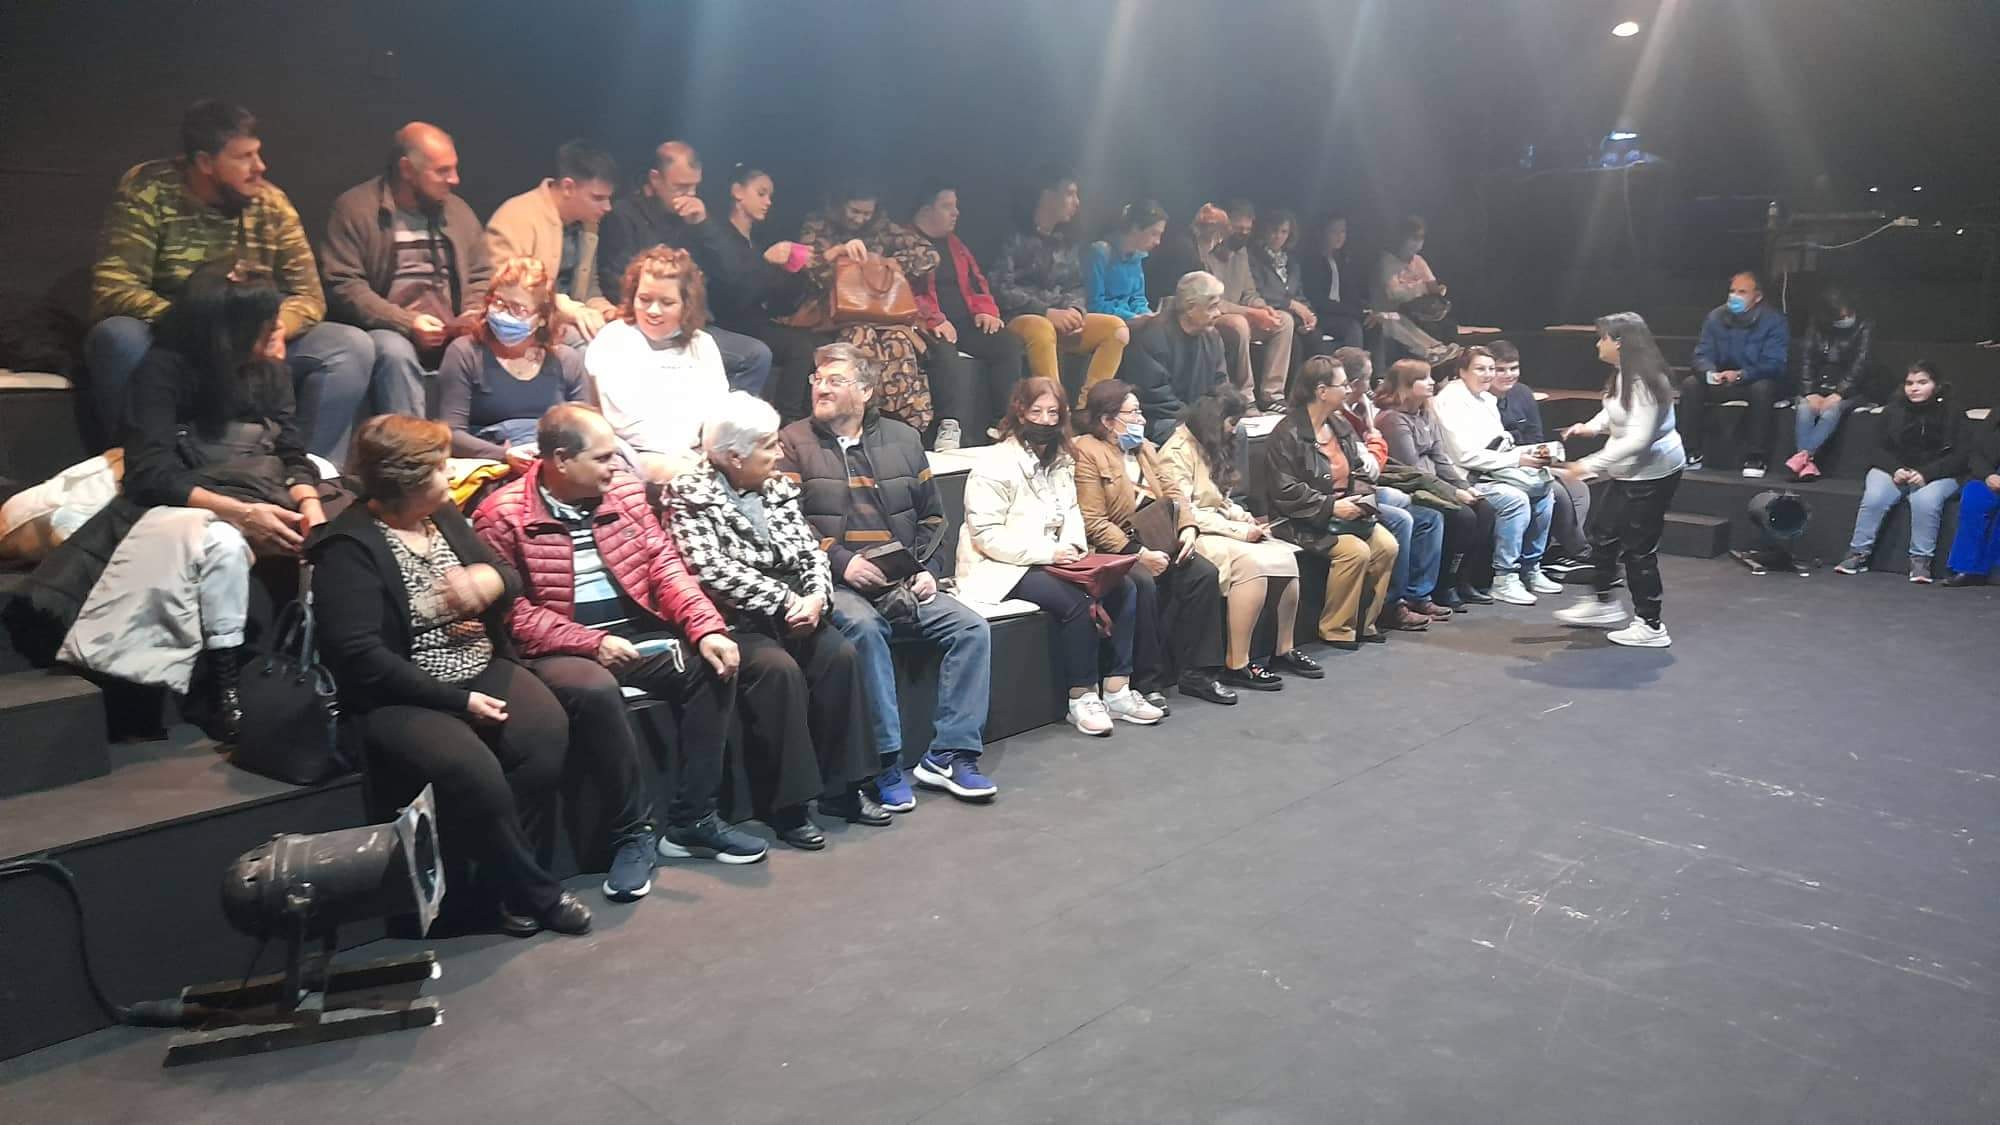 Ο Σύλλογος Γονέων, Κηδεμόνων και Φίλων Ατόμων με Αναπηρία Περιφέρειας Δυτικής Μακεδονίας: Ευχαριστήριο μήνυμα προς το ΔΗΠΕΘΕ Κοζάνης για την δωρεάν εξαιρετική παράσταση ”Το πιο γλυκό ψωμί”